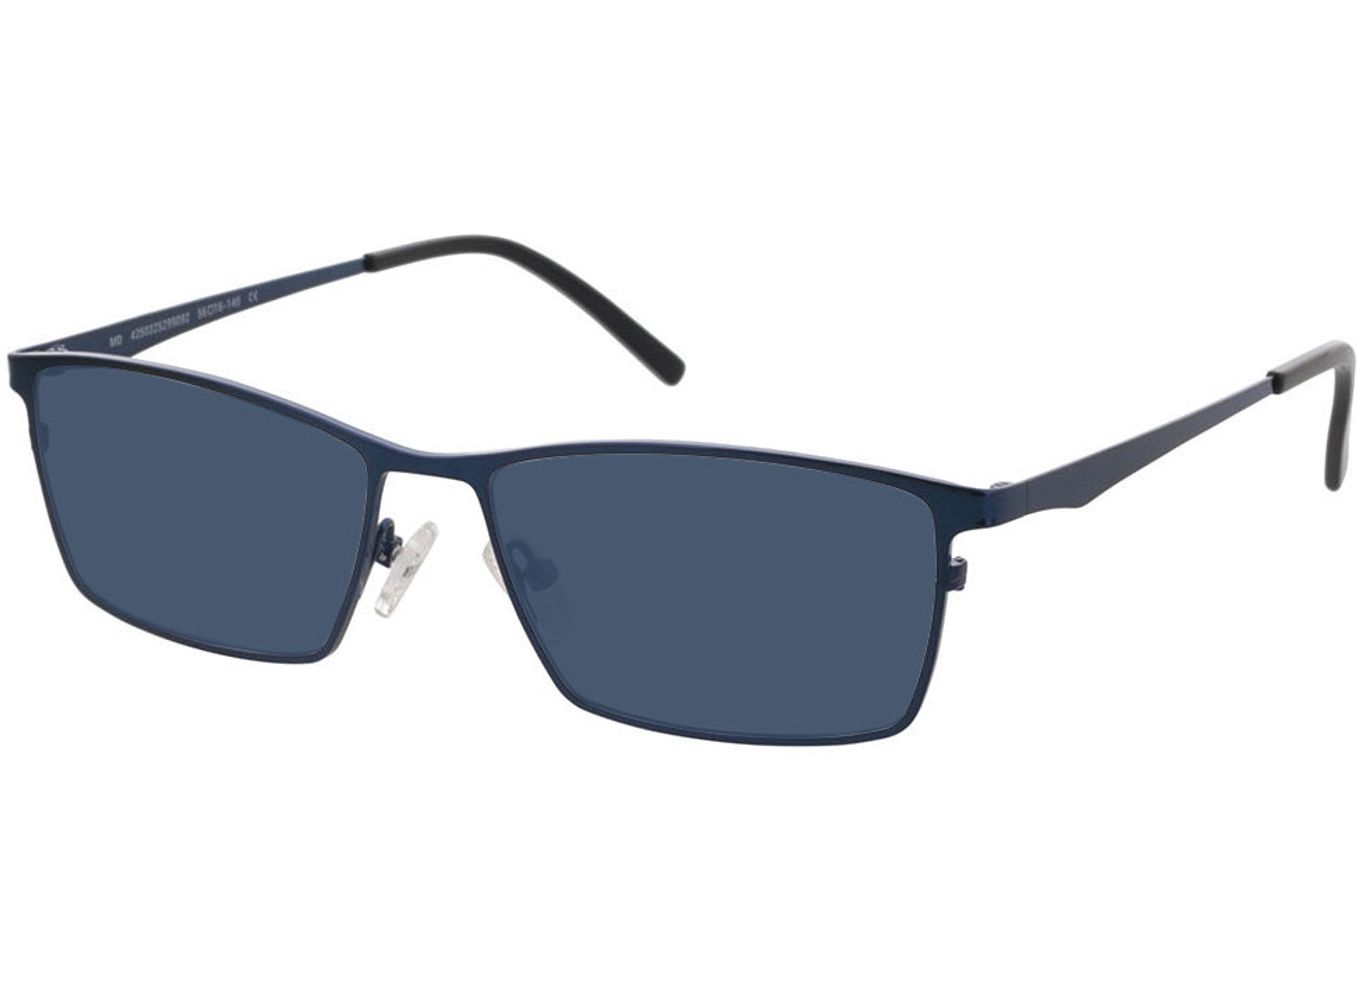 Prag - blau Sonnenbrille ohne Sehstärke, Vollrand, Rechteckig von Brille24 Collection